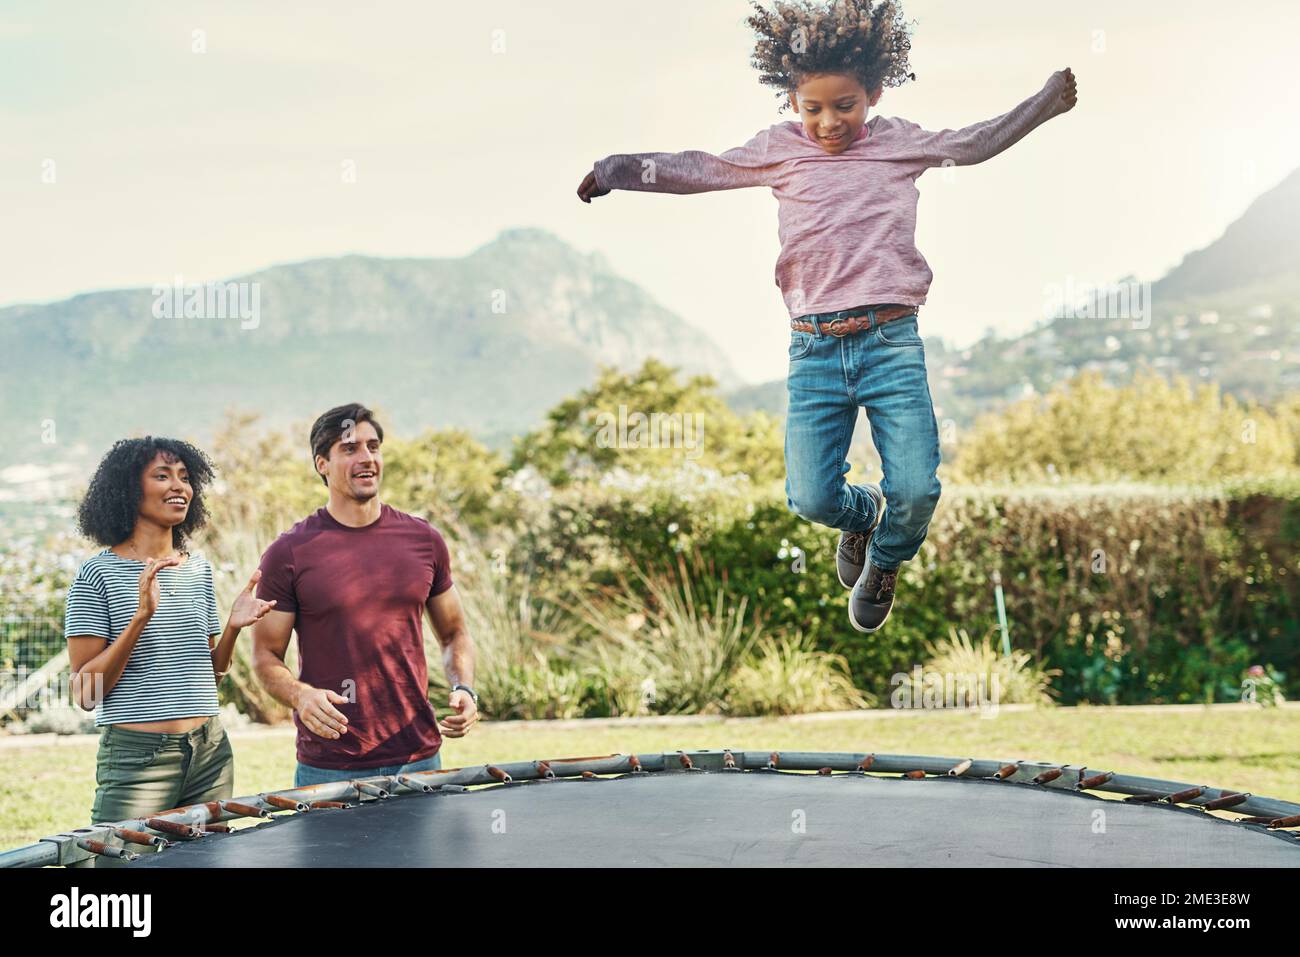 HES il nostro piccolo volantino. un adorabile ragazzino che salta su un trampolino con i suoi genitori che guardano da vicino sullo sfondo. Foto Stock